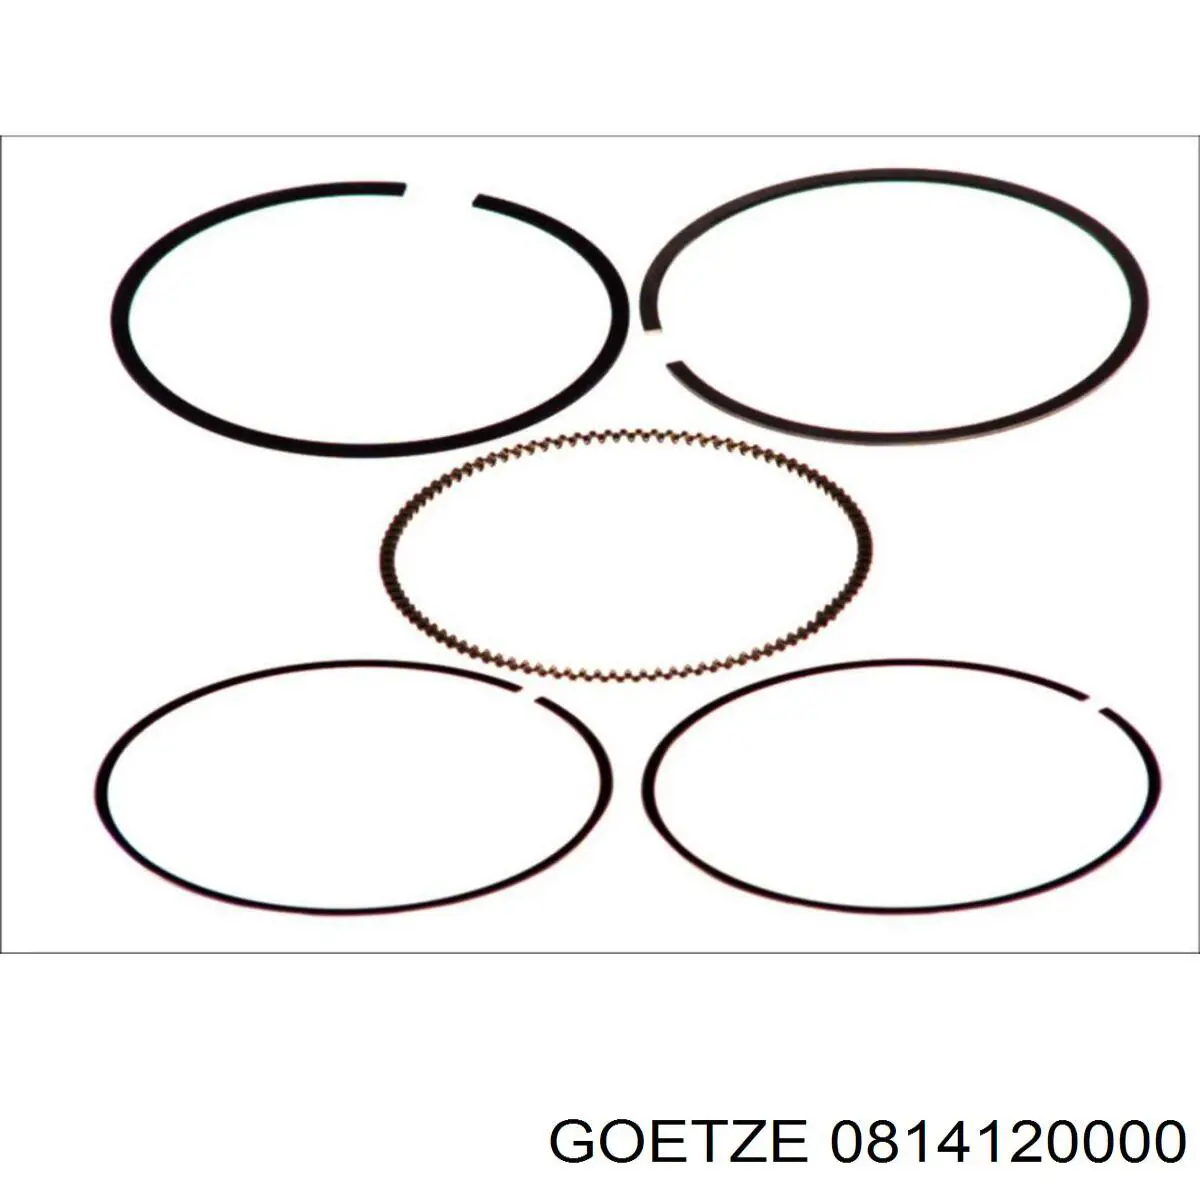 08-141200-00 Goetze кольца поршневые на 1 цилиндр, std.